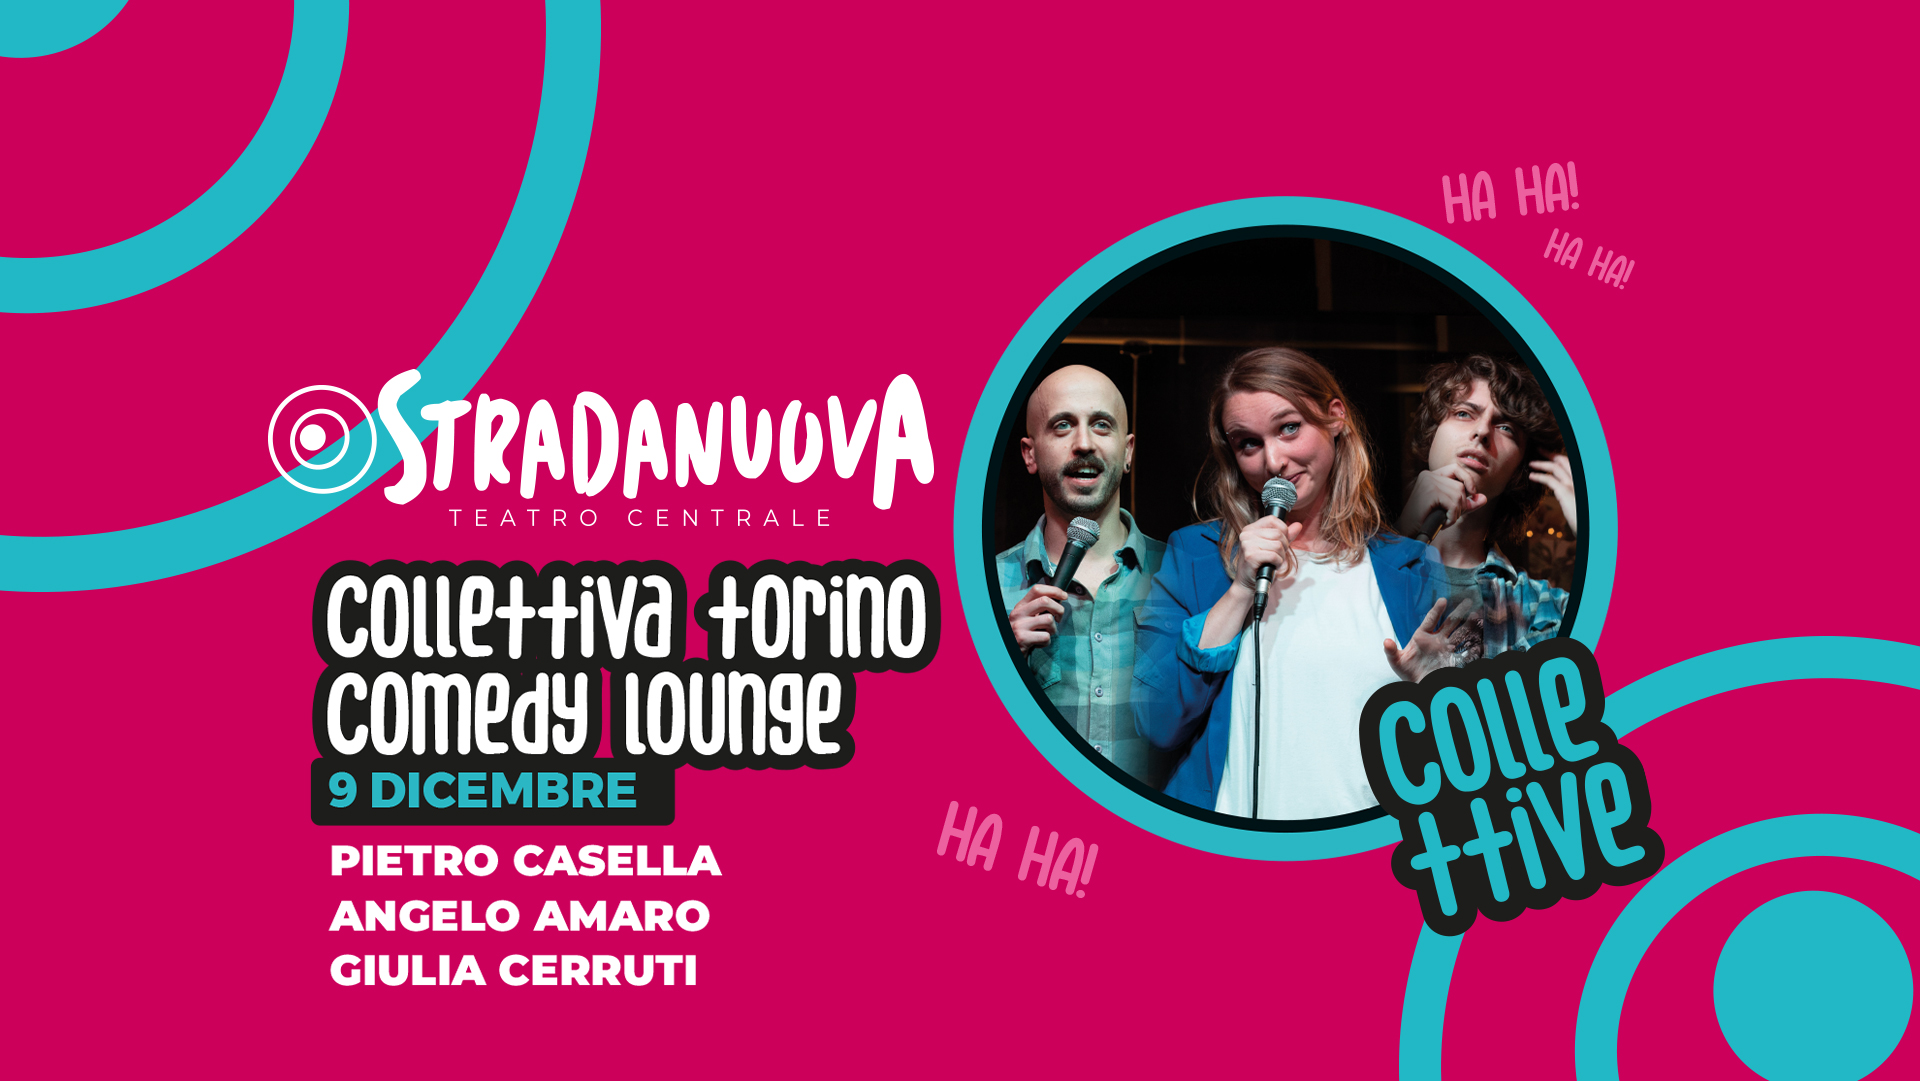 Annullamento spettacolo Colletiva Torino Comedy Lounge del 9 dicembre alle 21.00